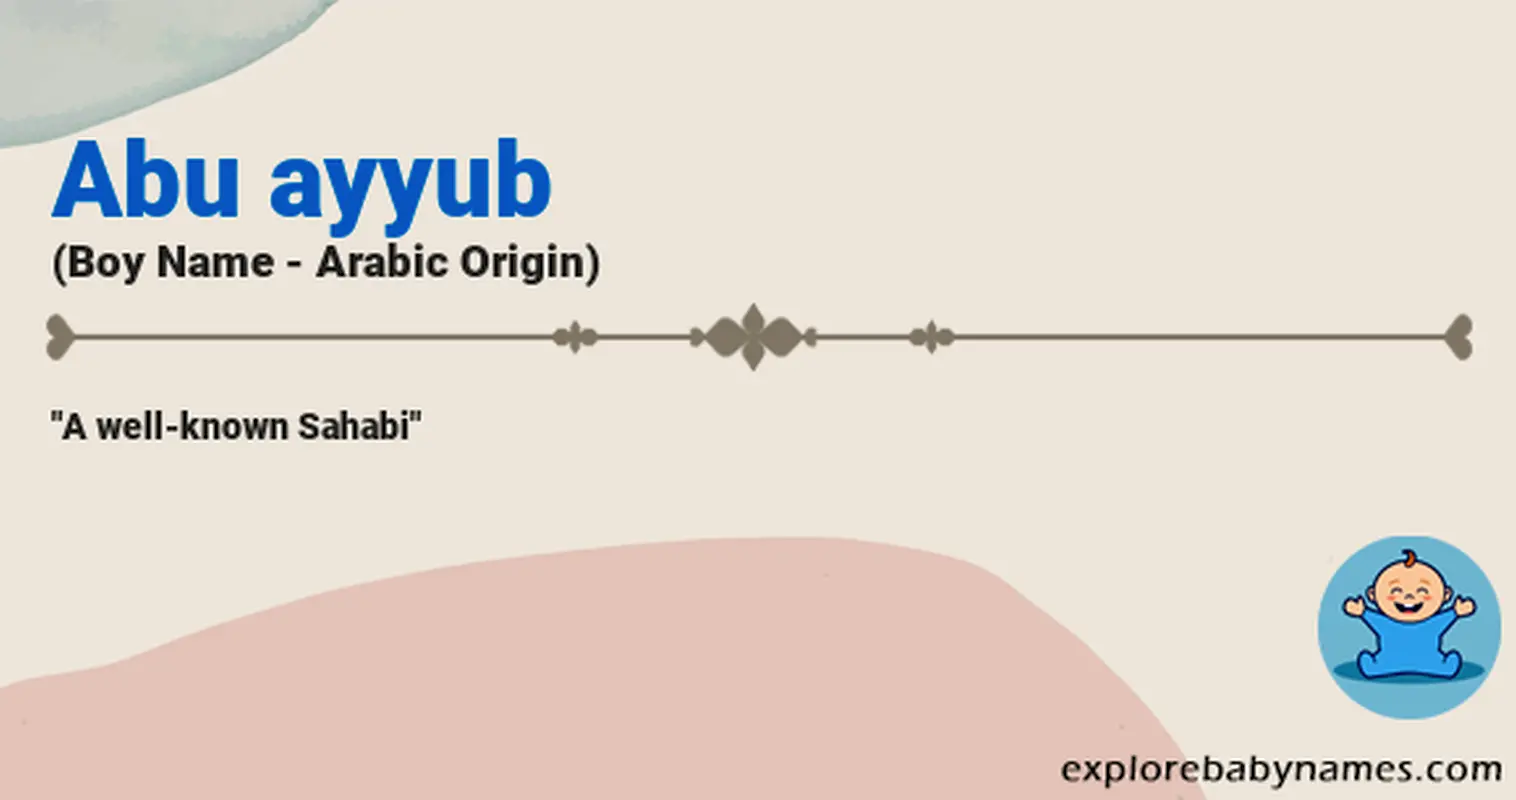 Meaning of Abu ayyub